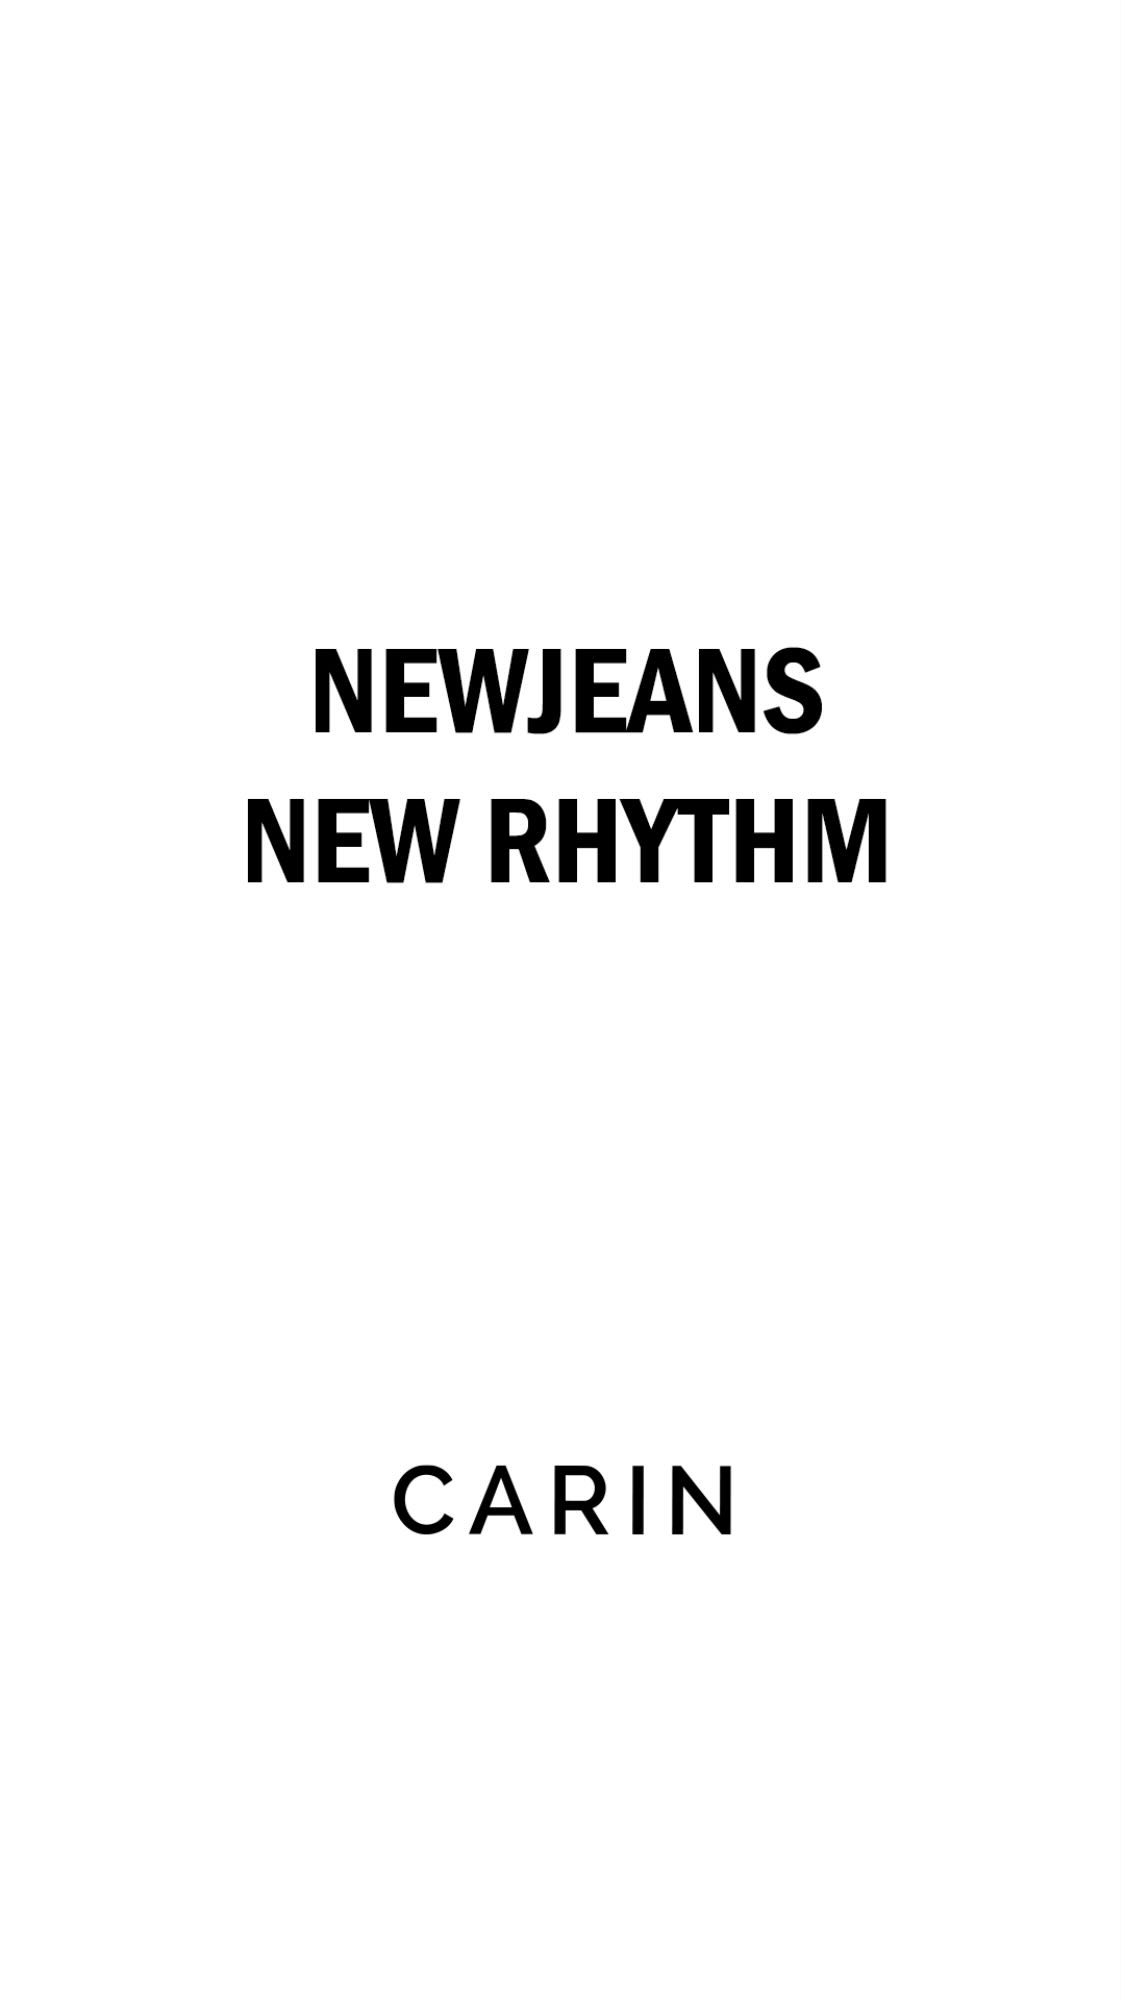 [閒聊] 代言時尚墨鏡品牌CARIN的NewJeans